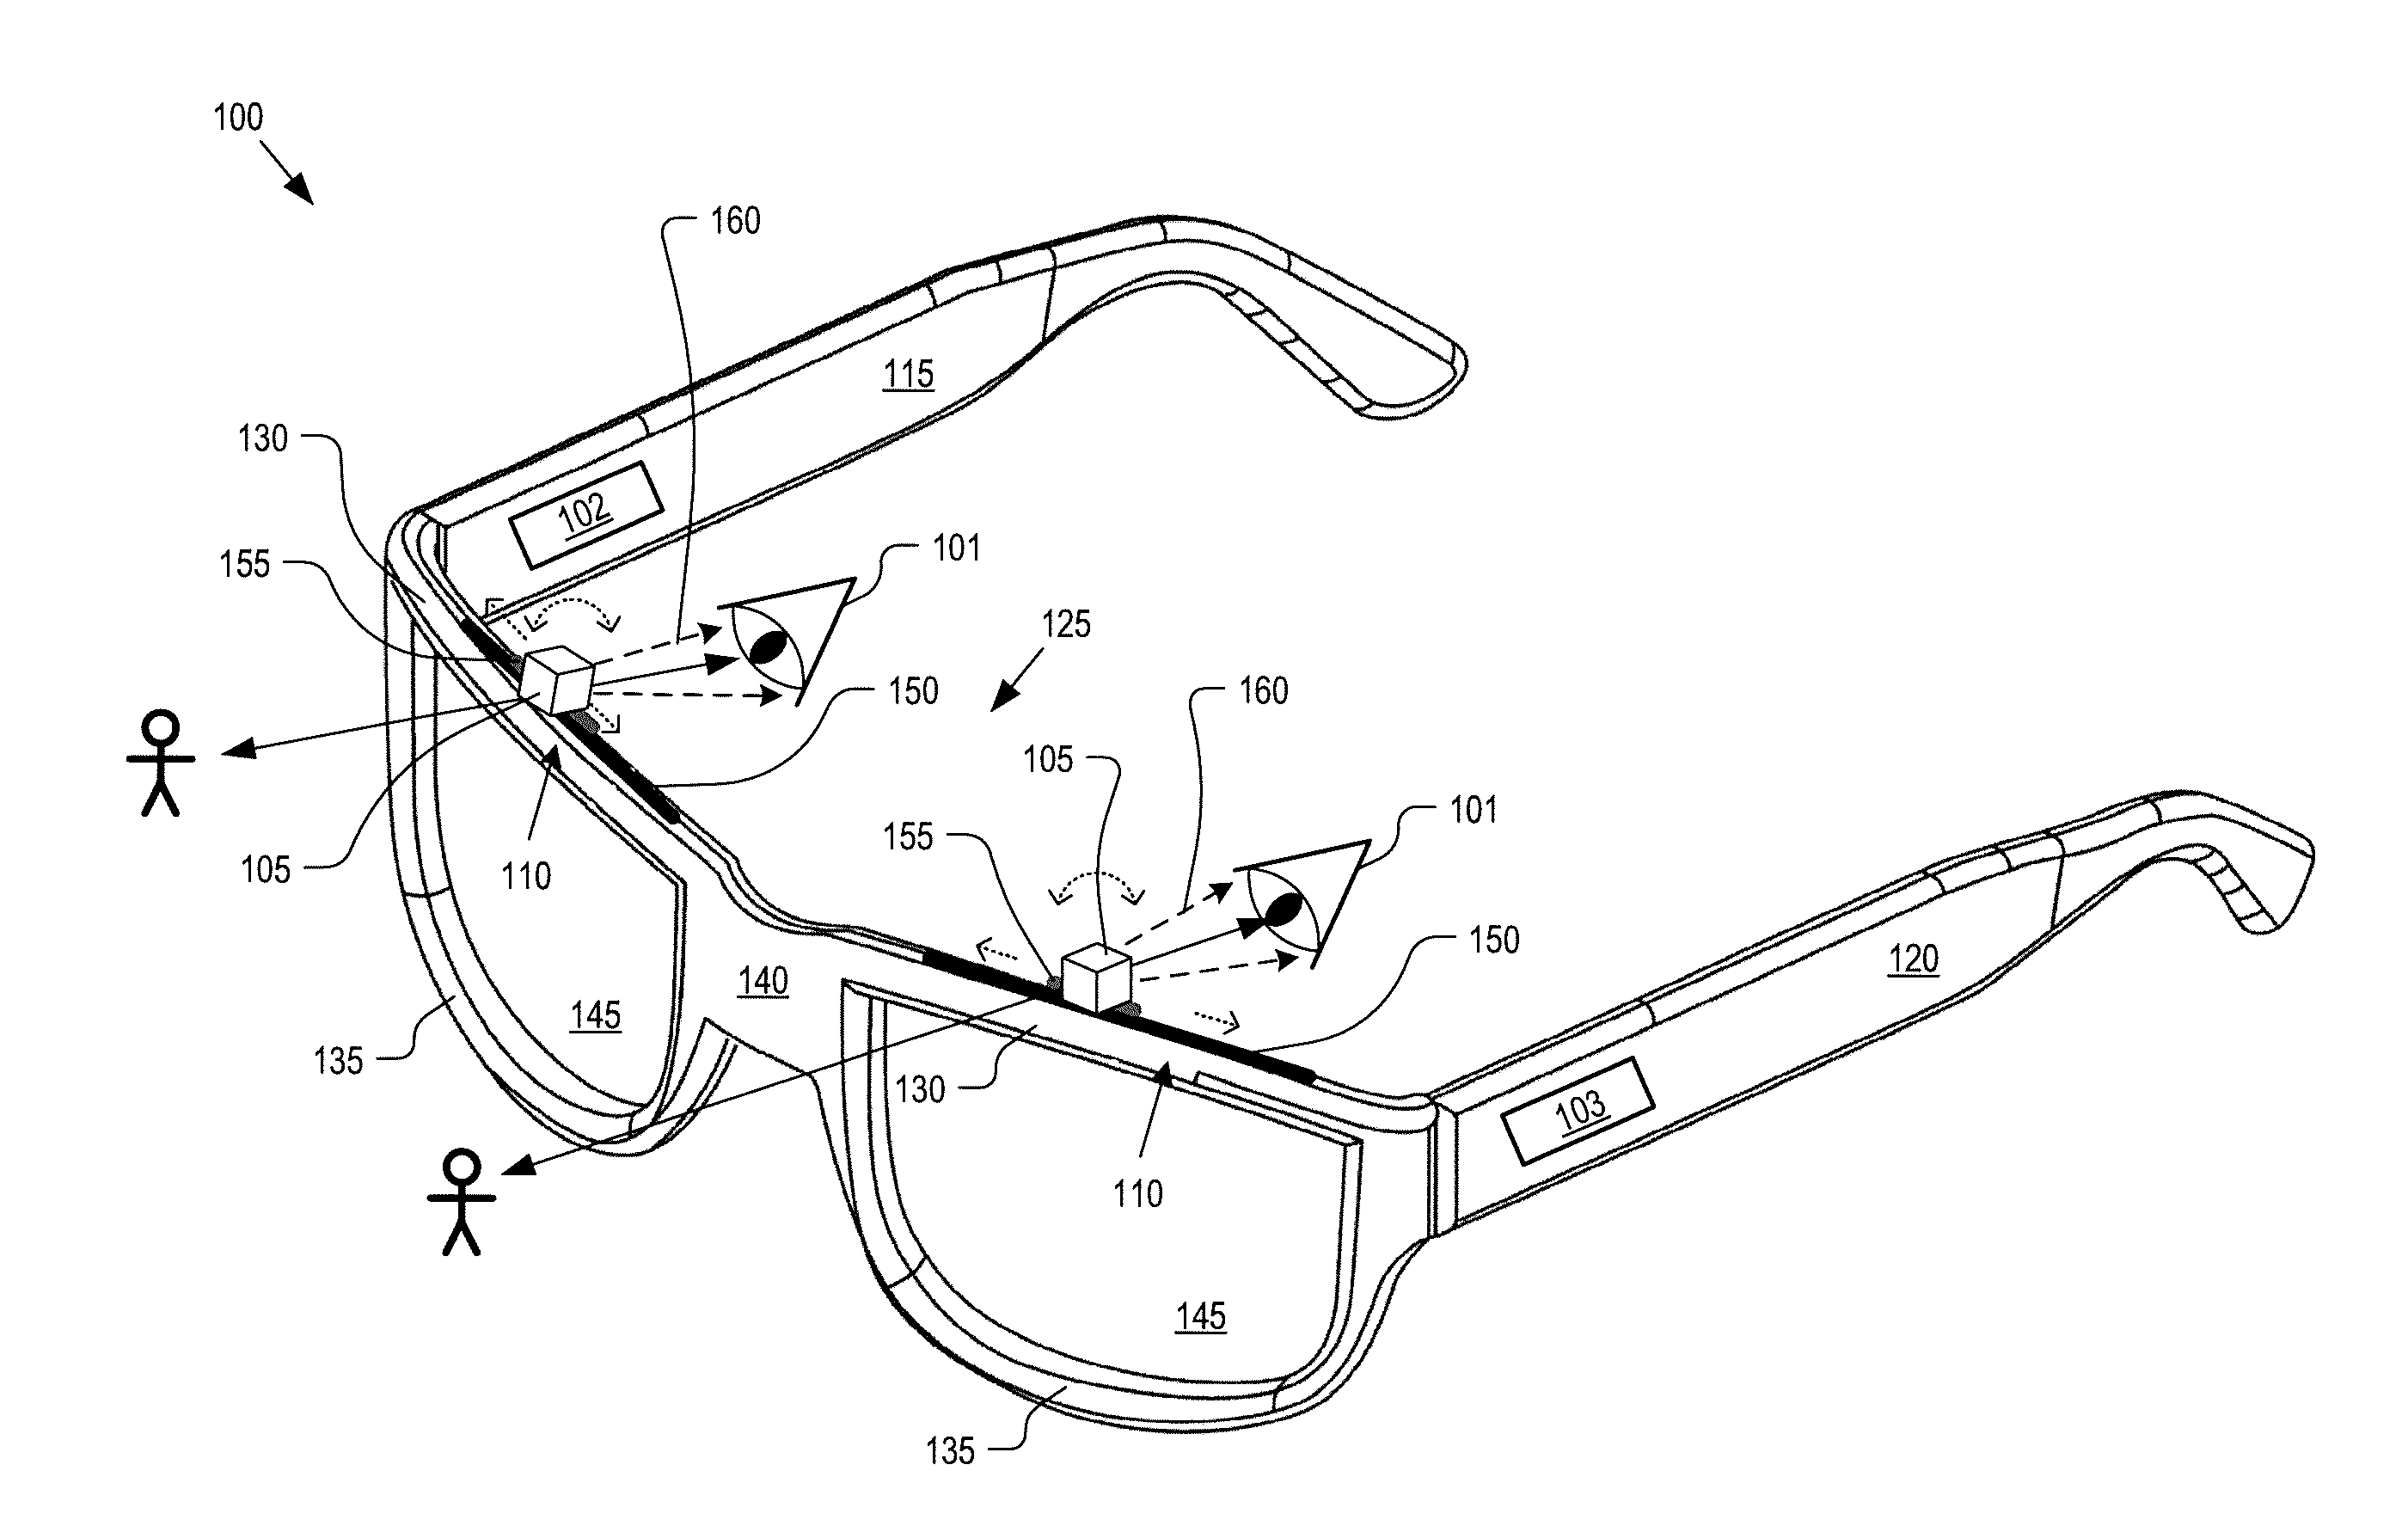 Integrated near-to-eye display module